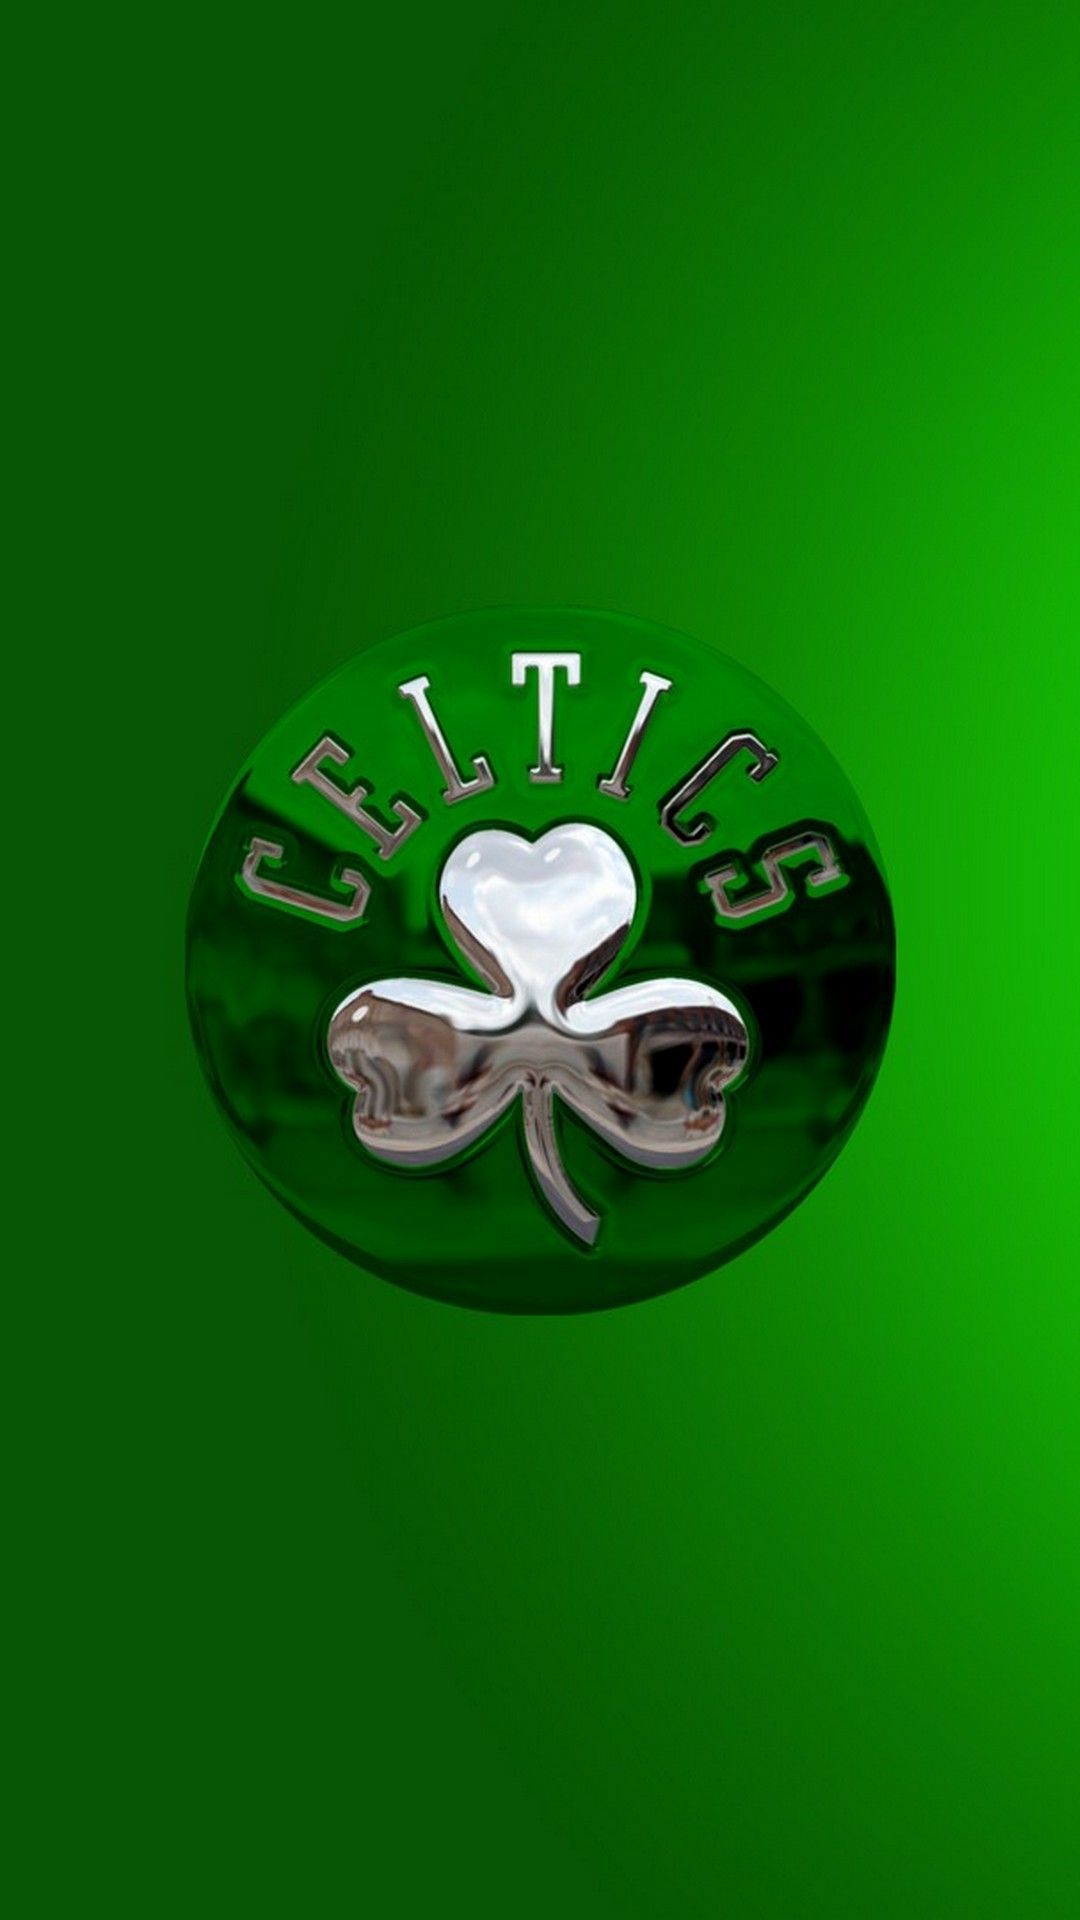 Boston Celtics Wallpaper For Android Mobile Wallpaper